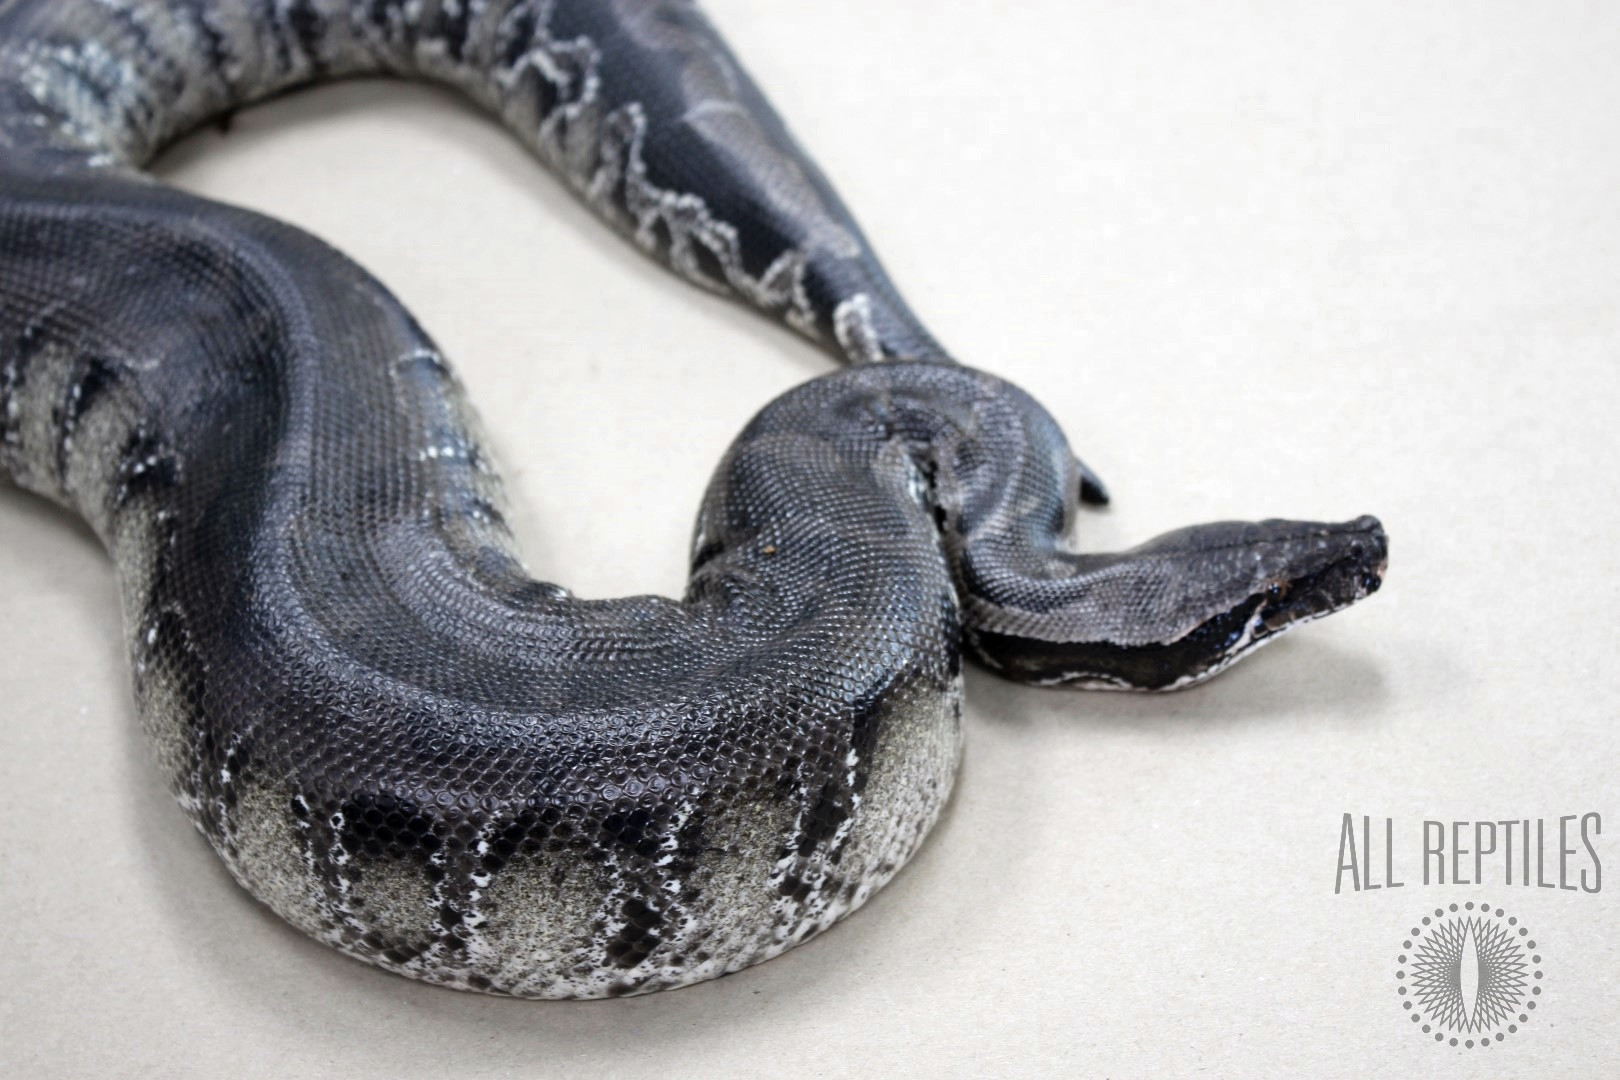 Subadult Black Blood Python